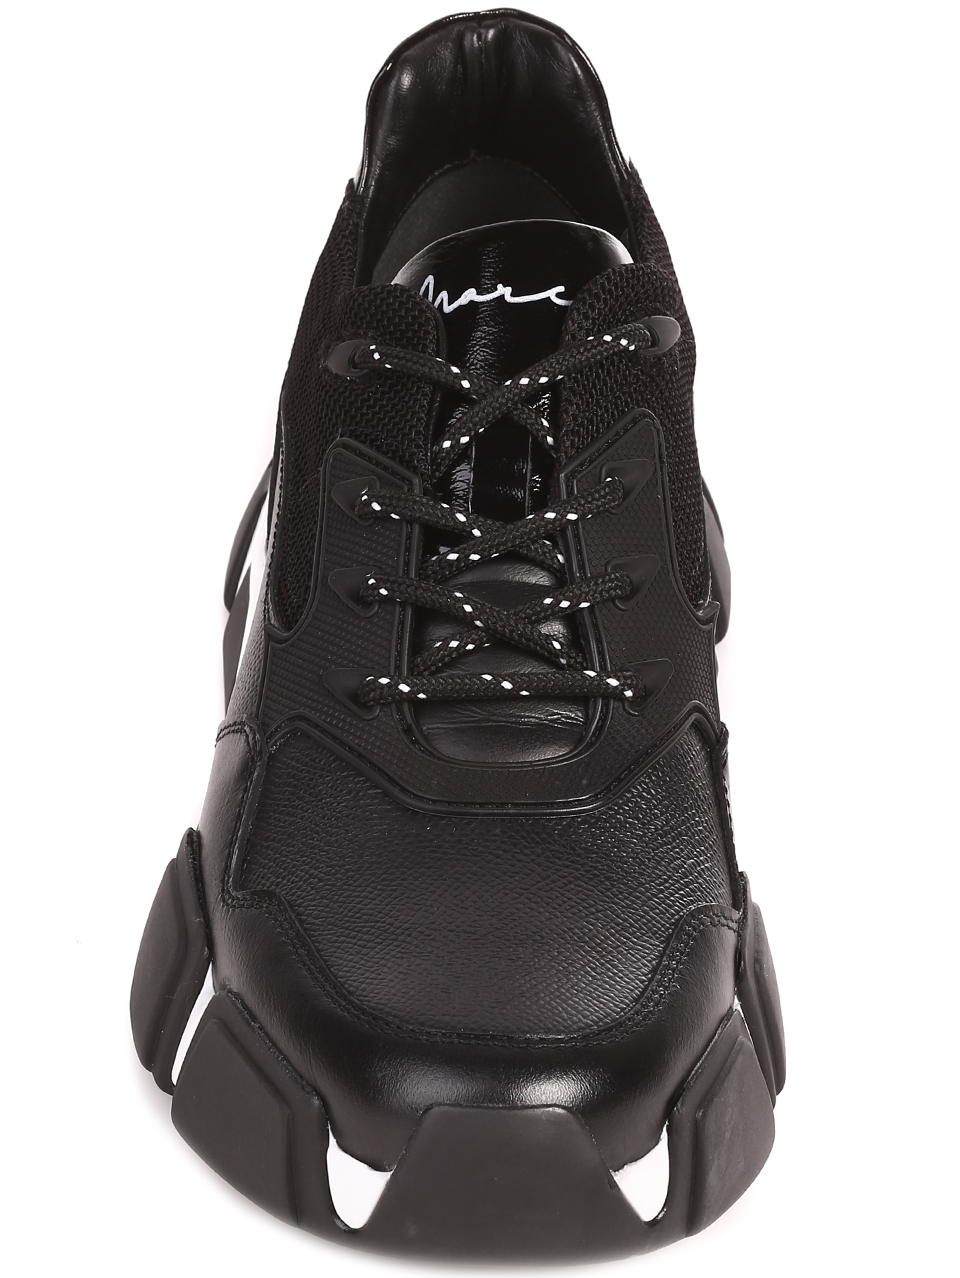 Ежедневни мъжки обувки от естествена кожа 152-17368 black